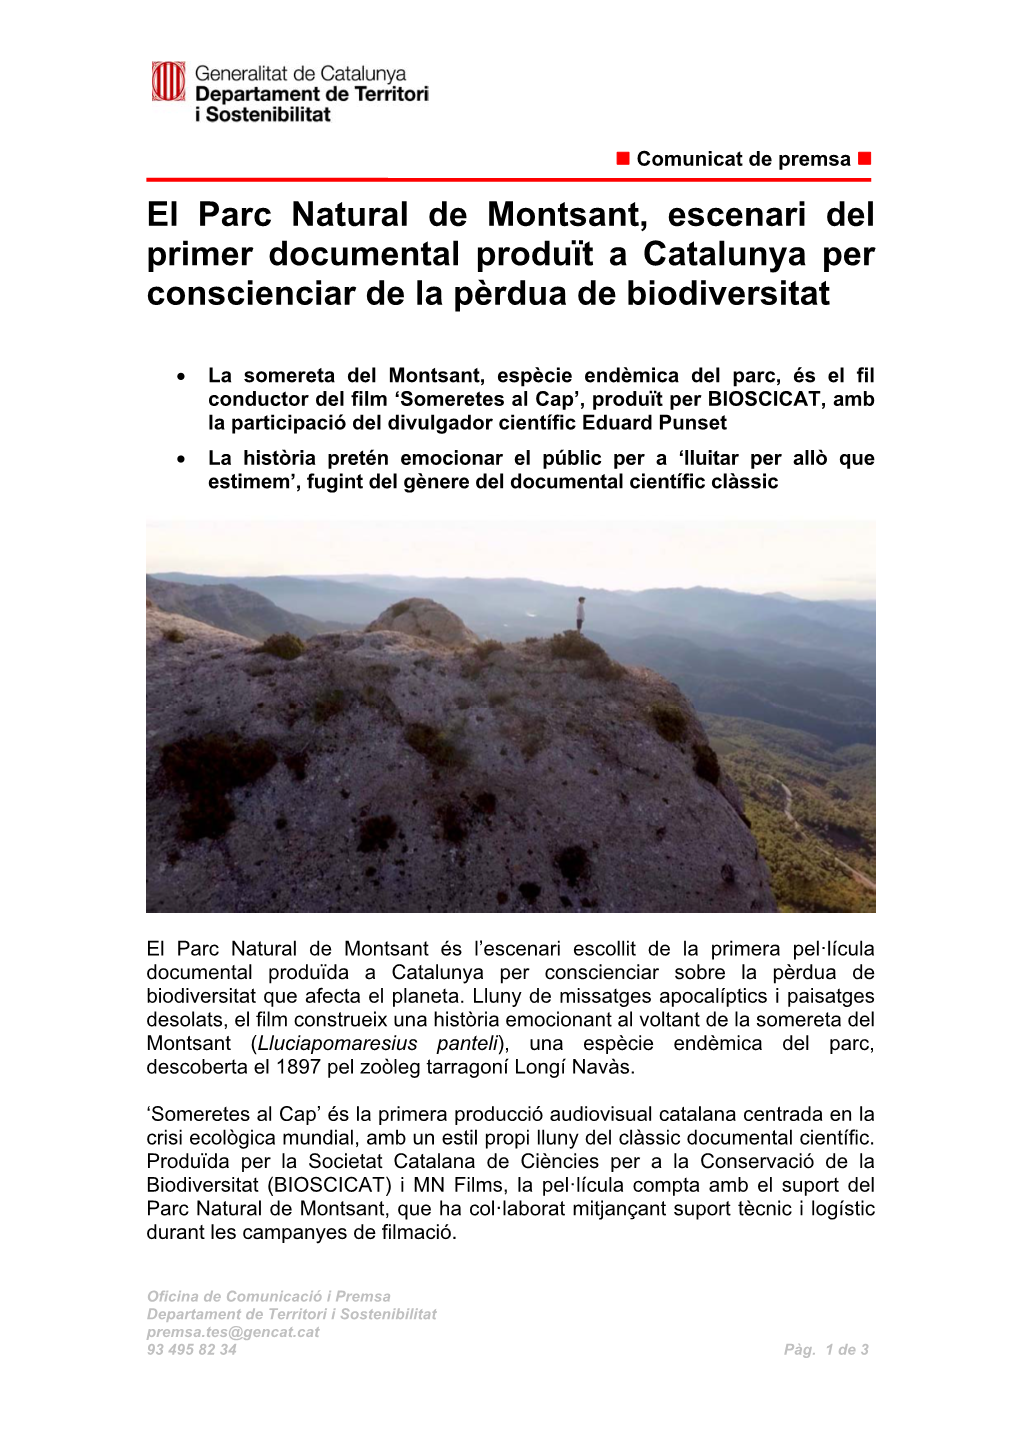 El Parc Natural De Montsant, Escenari Del Primer Documental Produït a Catalunya Per Conscienciar De La Pèrdua De Biodiversitat